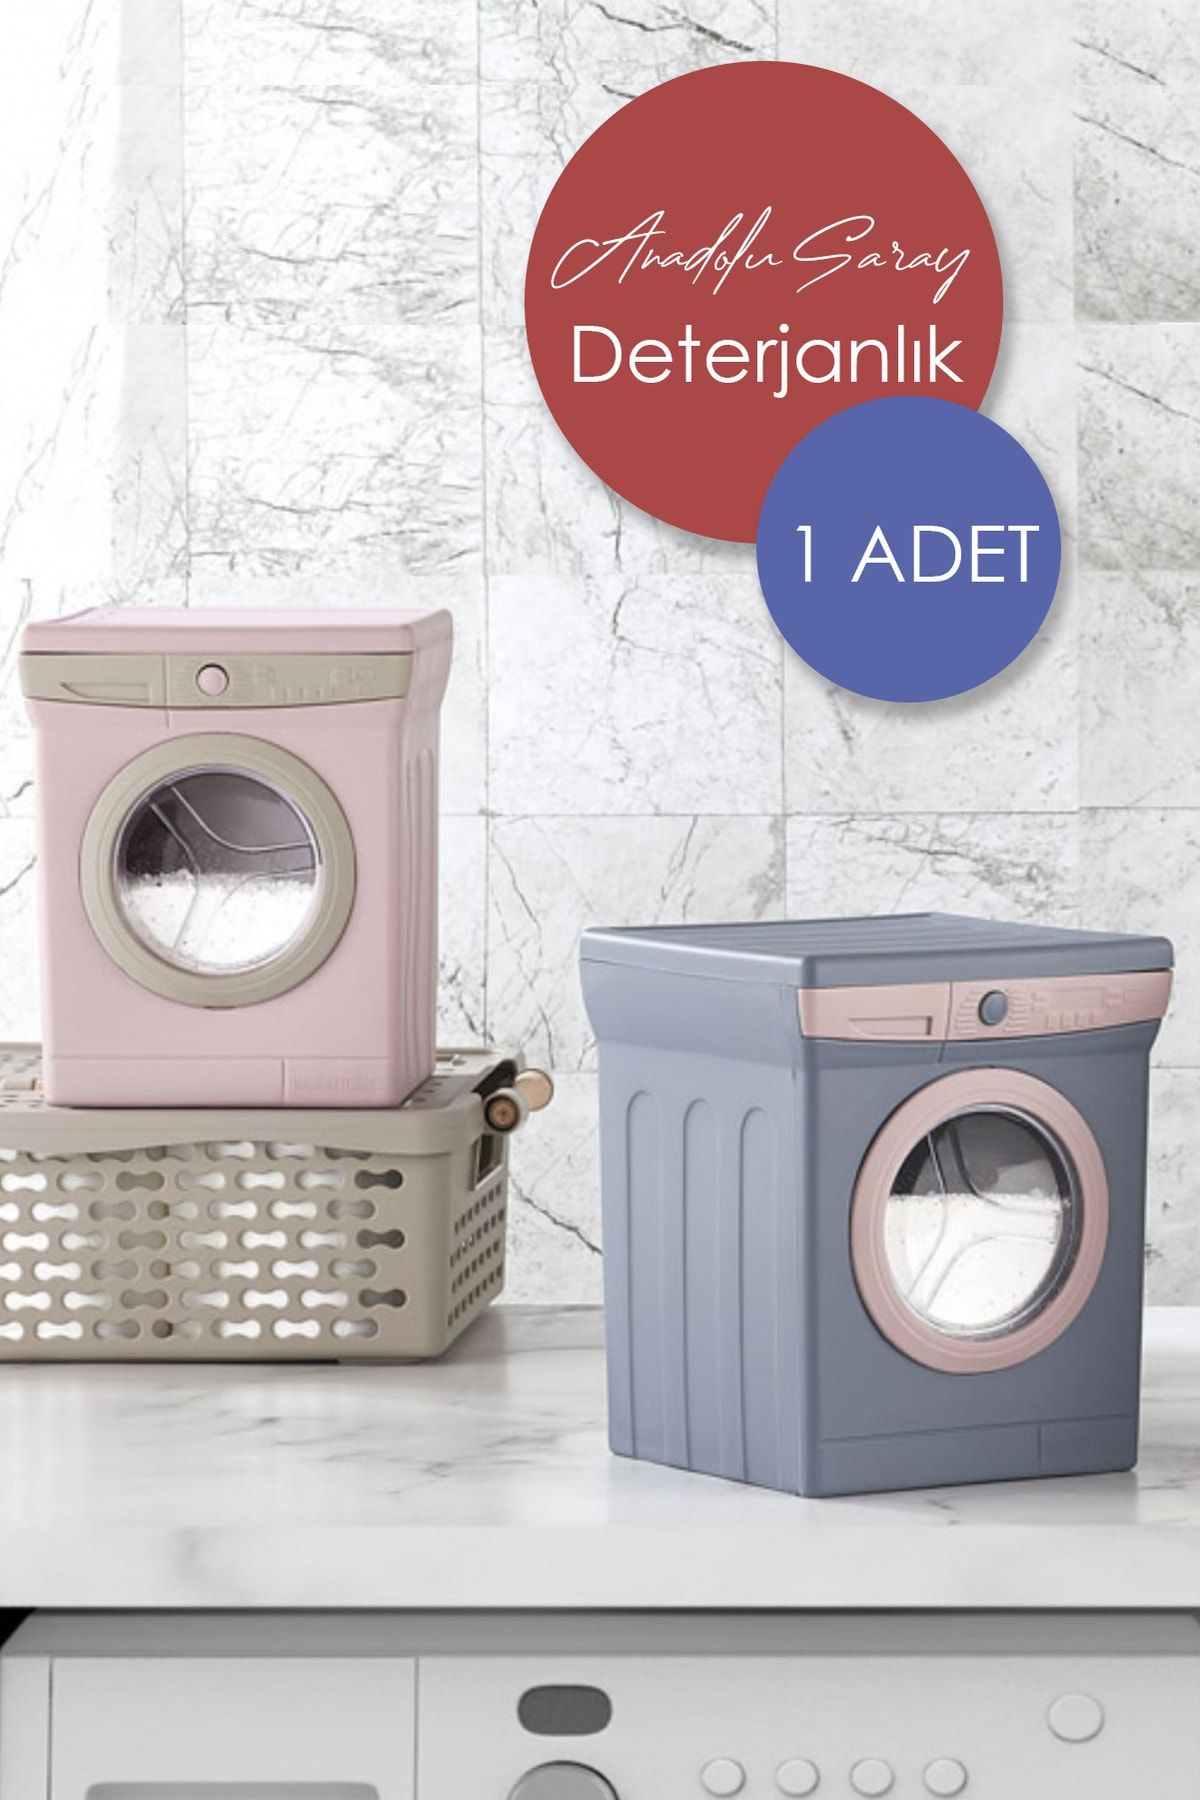 Anadolu Saray Çarşısı Toz Çamaşır Yıkama Deterjanlığı | Deterjanlık | Çamaşır Makinası Görünümlü Deterjan Kutusu - 1 Adet